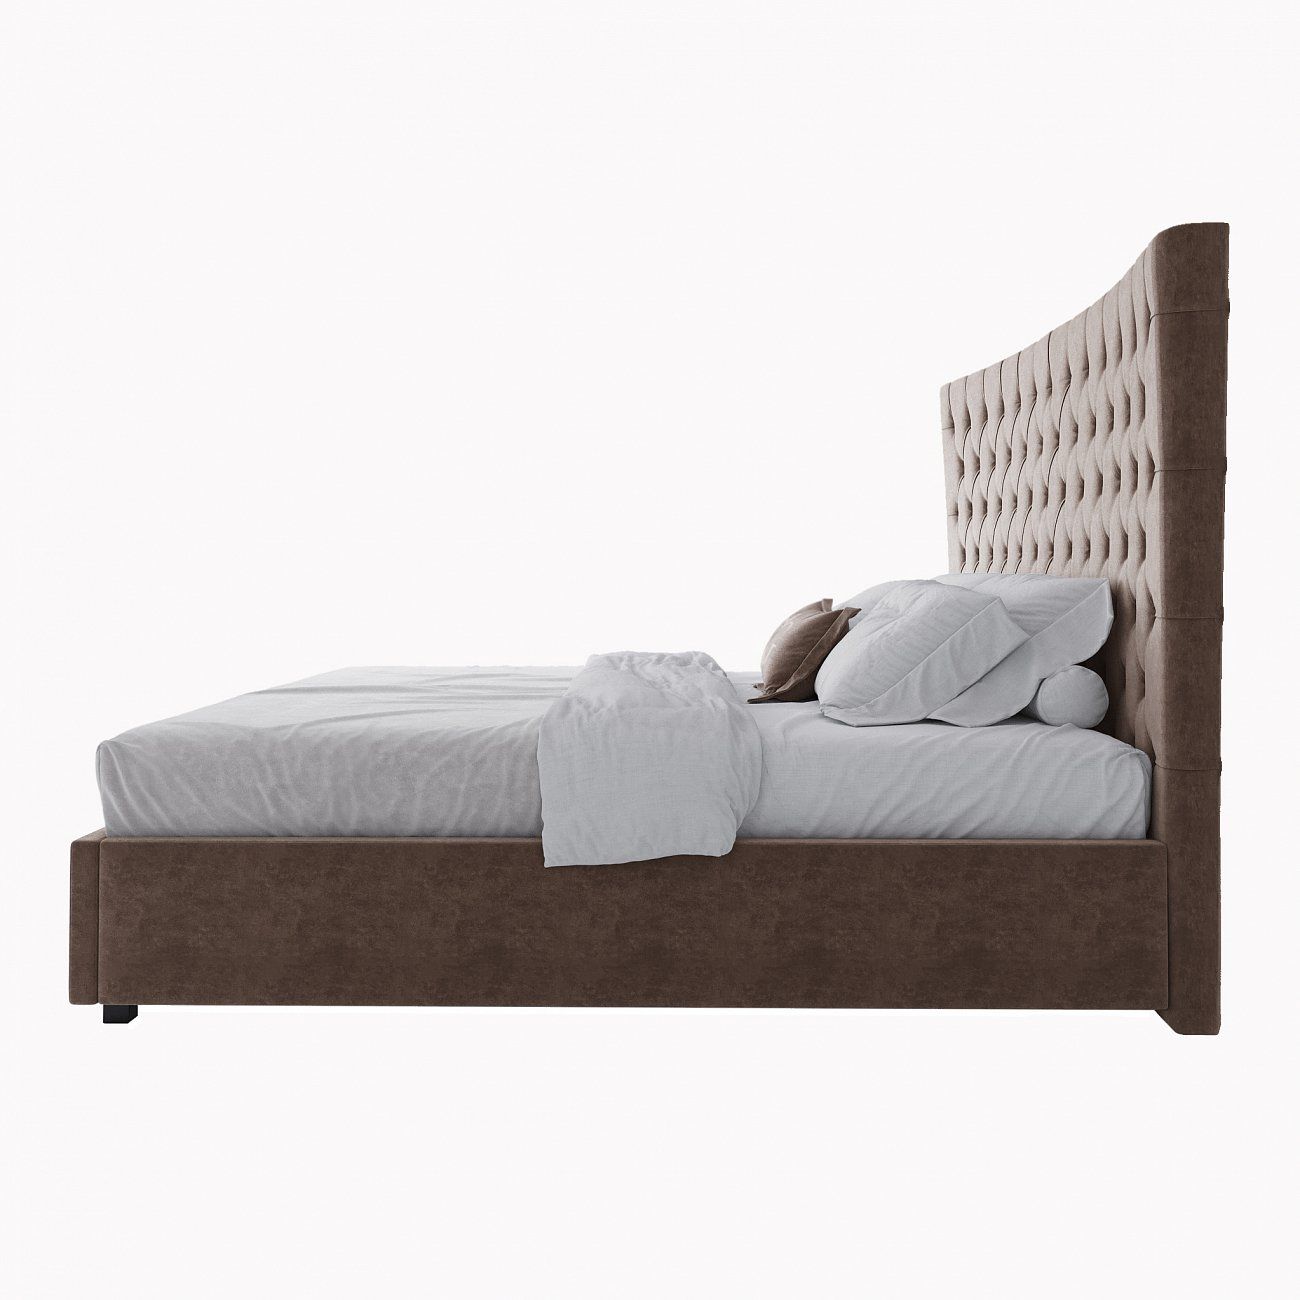 Кровать евро с мягким изголовьем 200х200 см серо-коричневая QuickSand